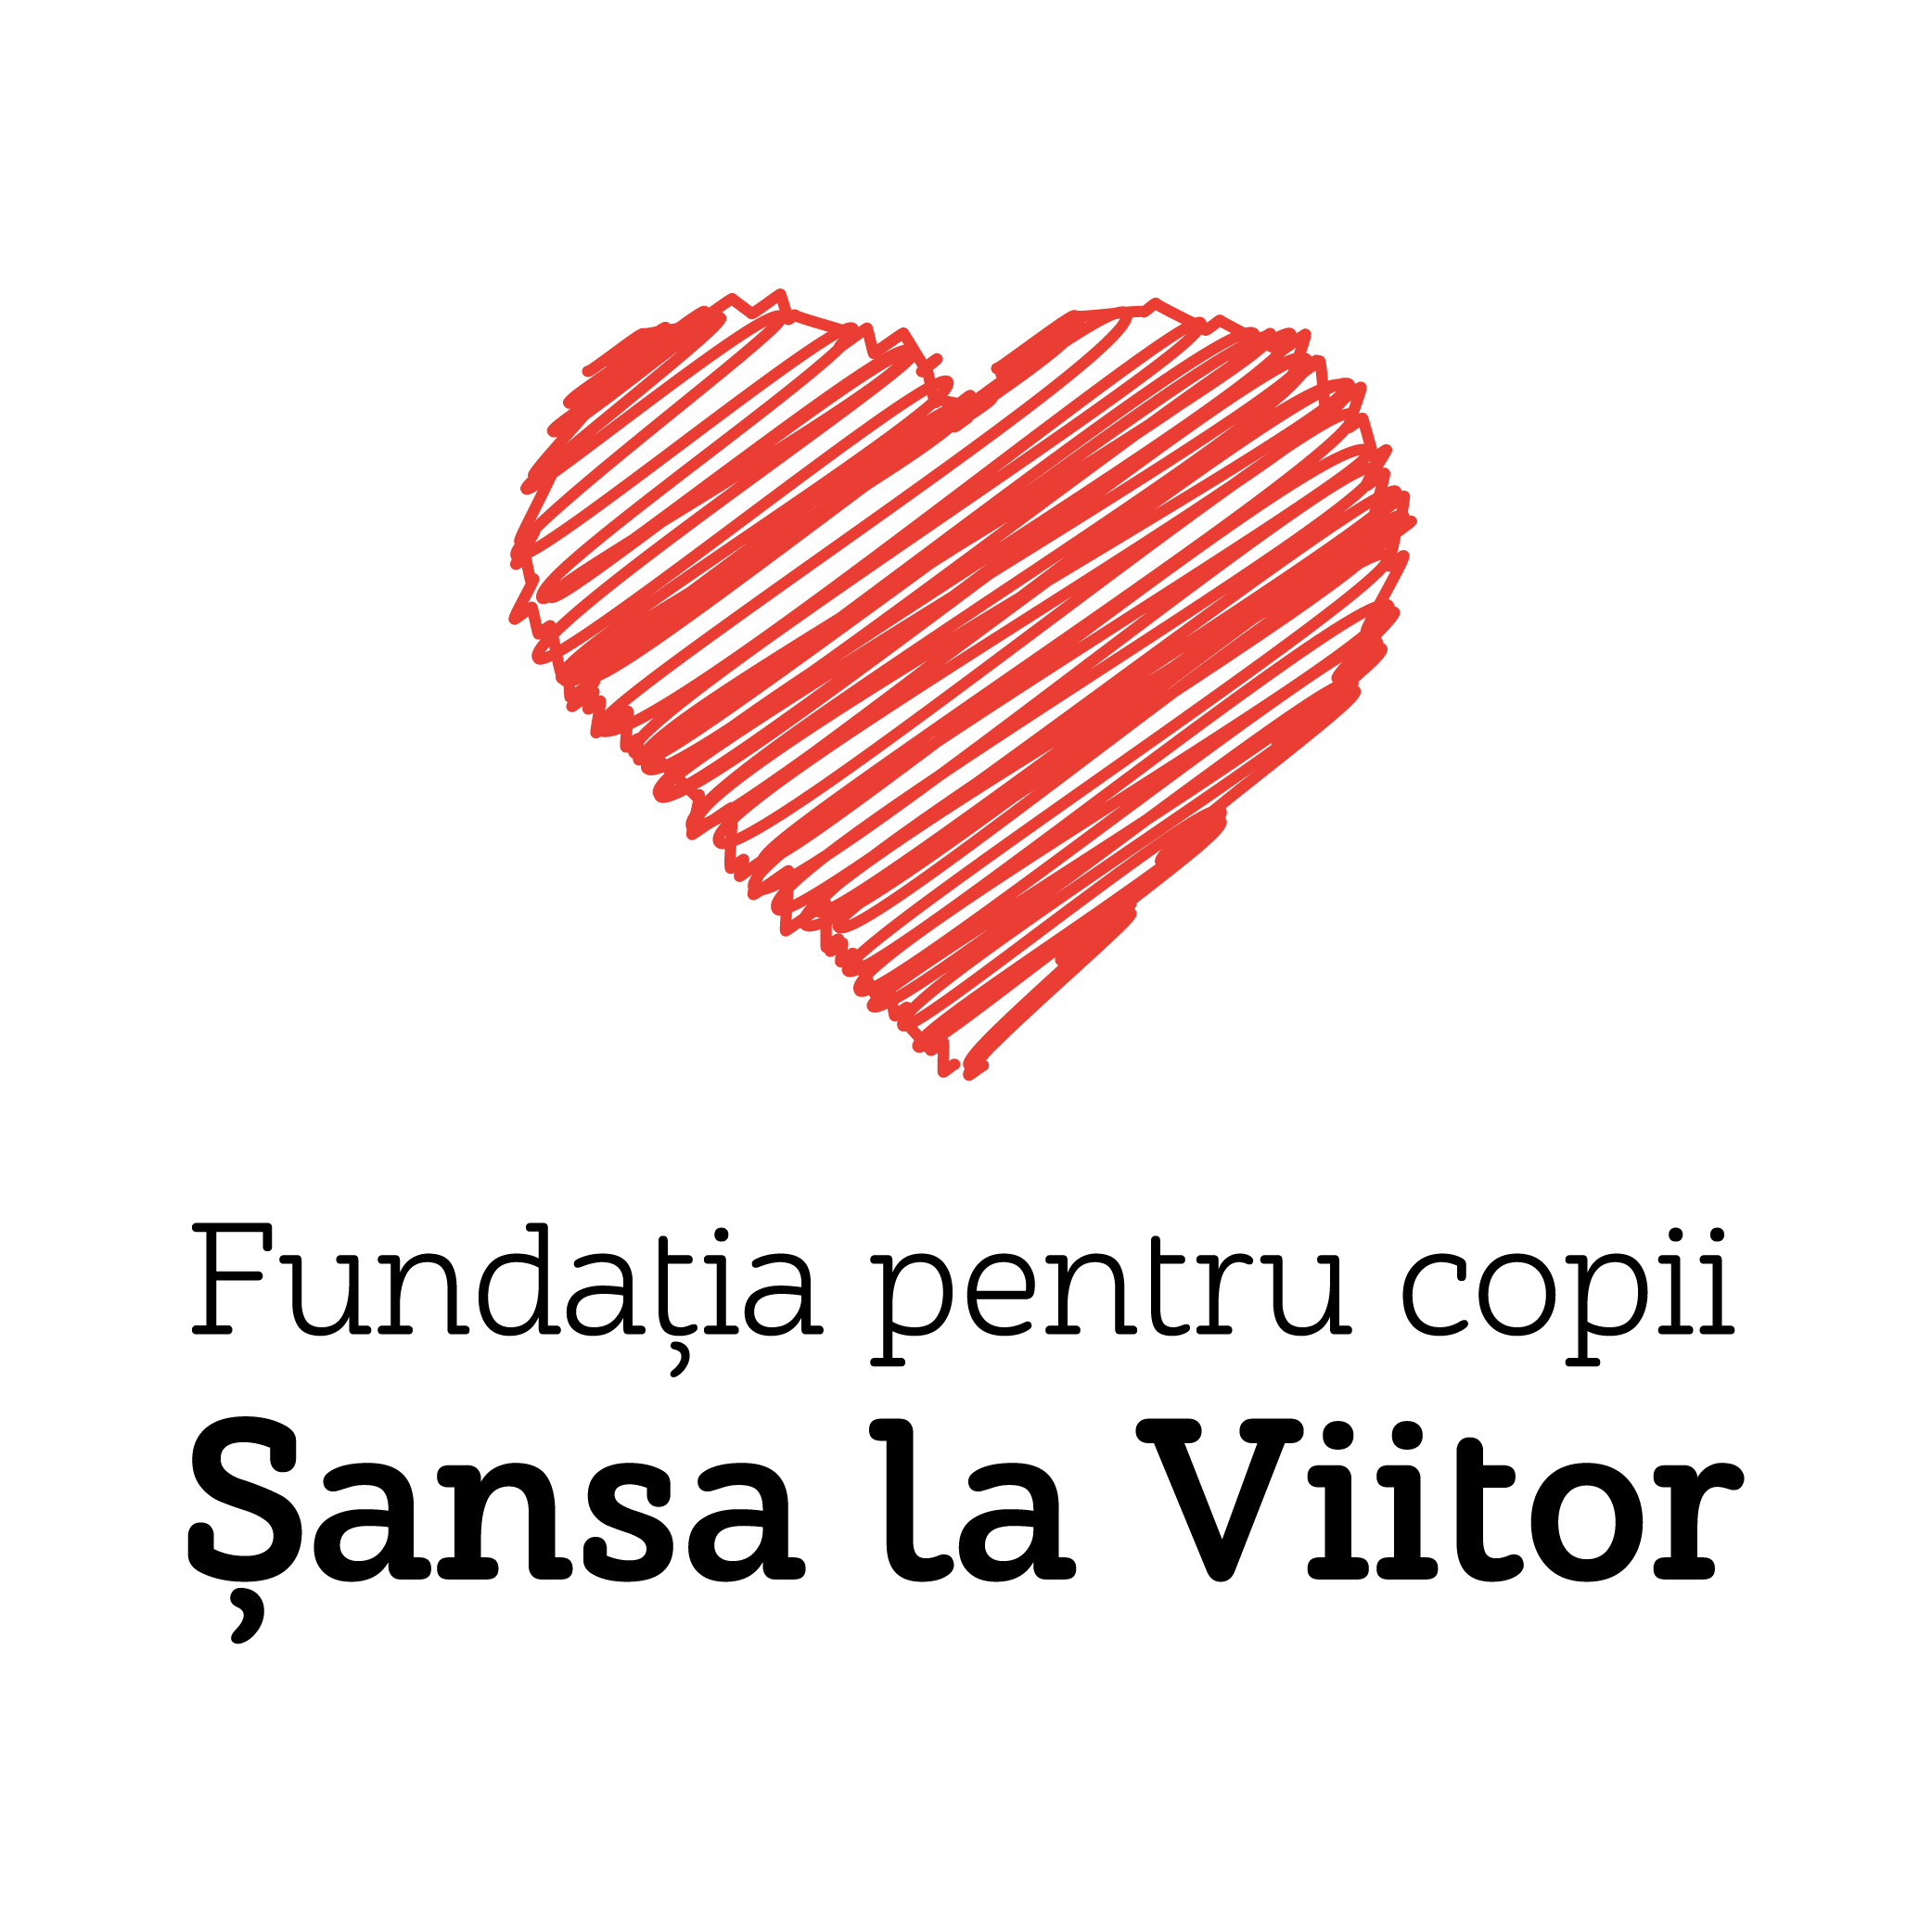 Fundatia pentru copii Sansa la Viitor logo